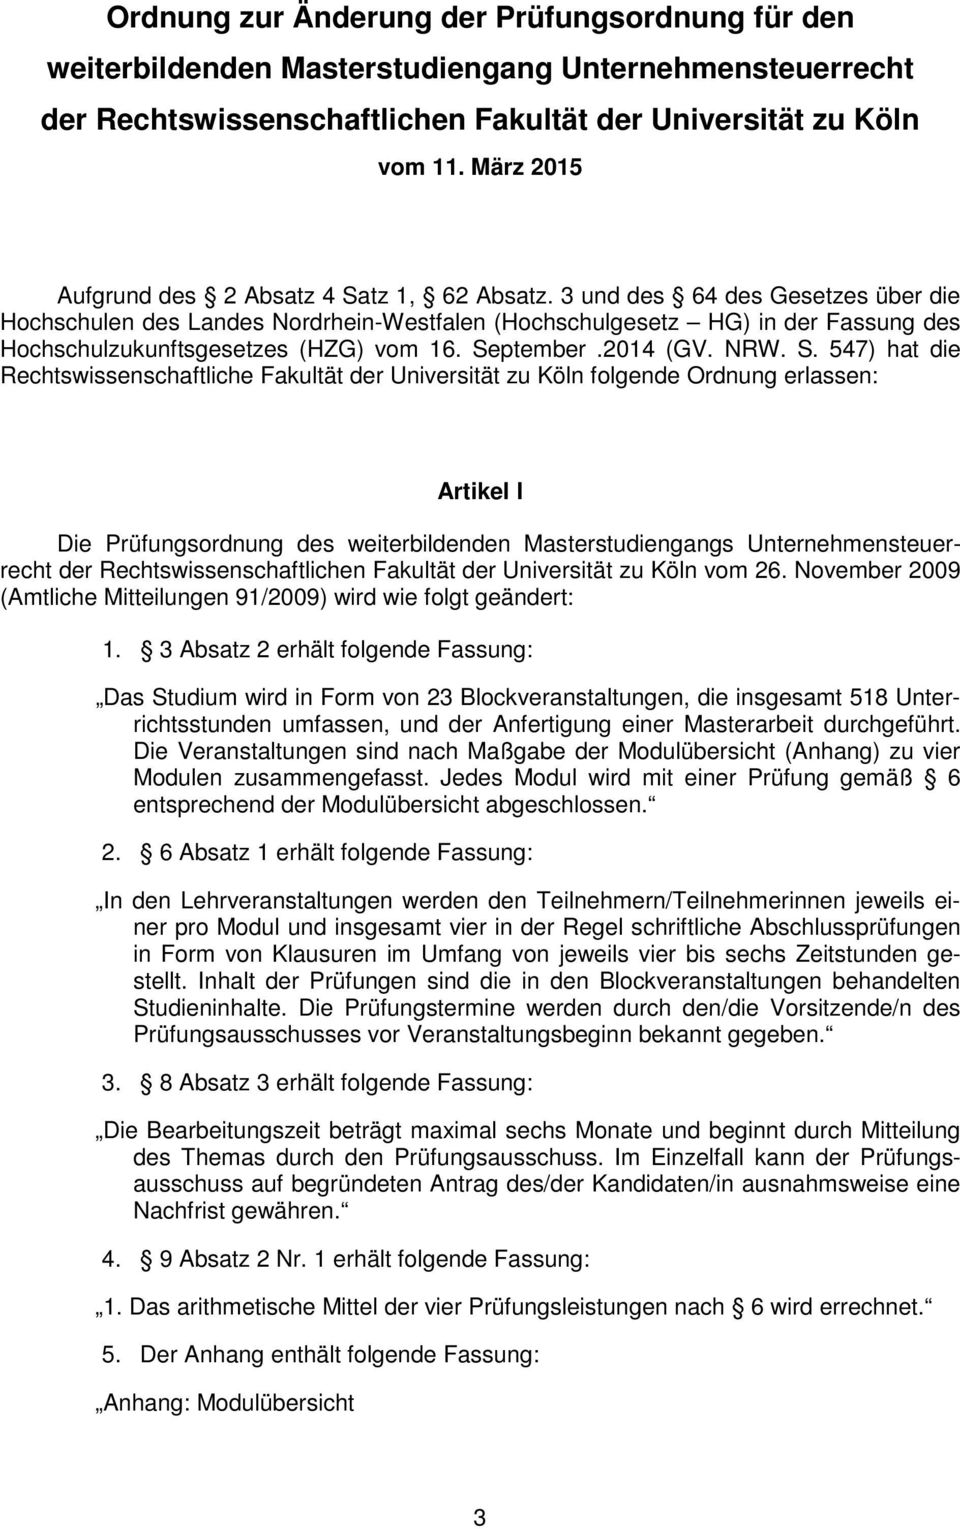 3 und des 64 des Gesetzes über die Hochschulen des Landes Nordrhein-Westfalen (Hochschulgesetz HG) in der Fassung des Hochschulzukunftsgesetzes (HZG) vom 16. Se